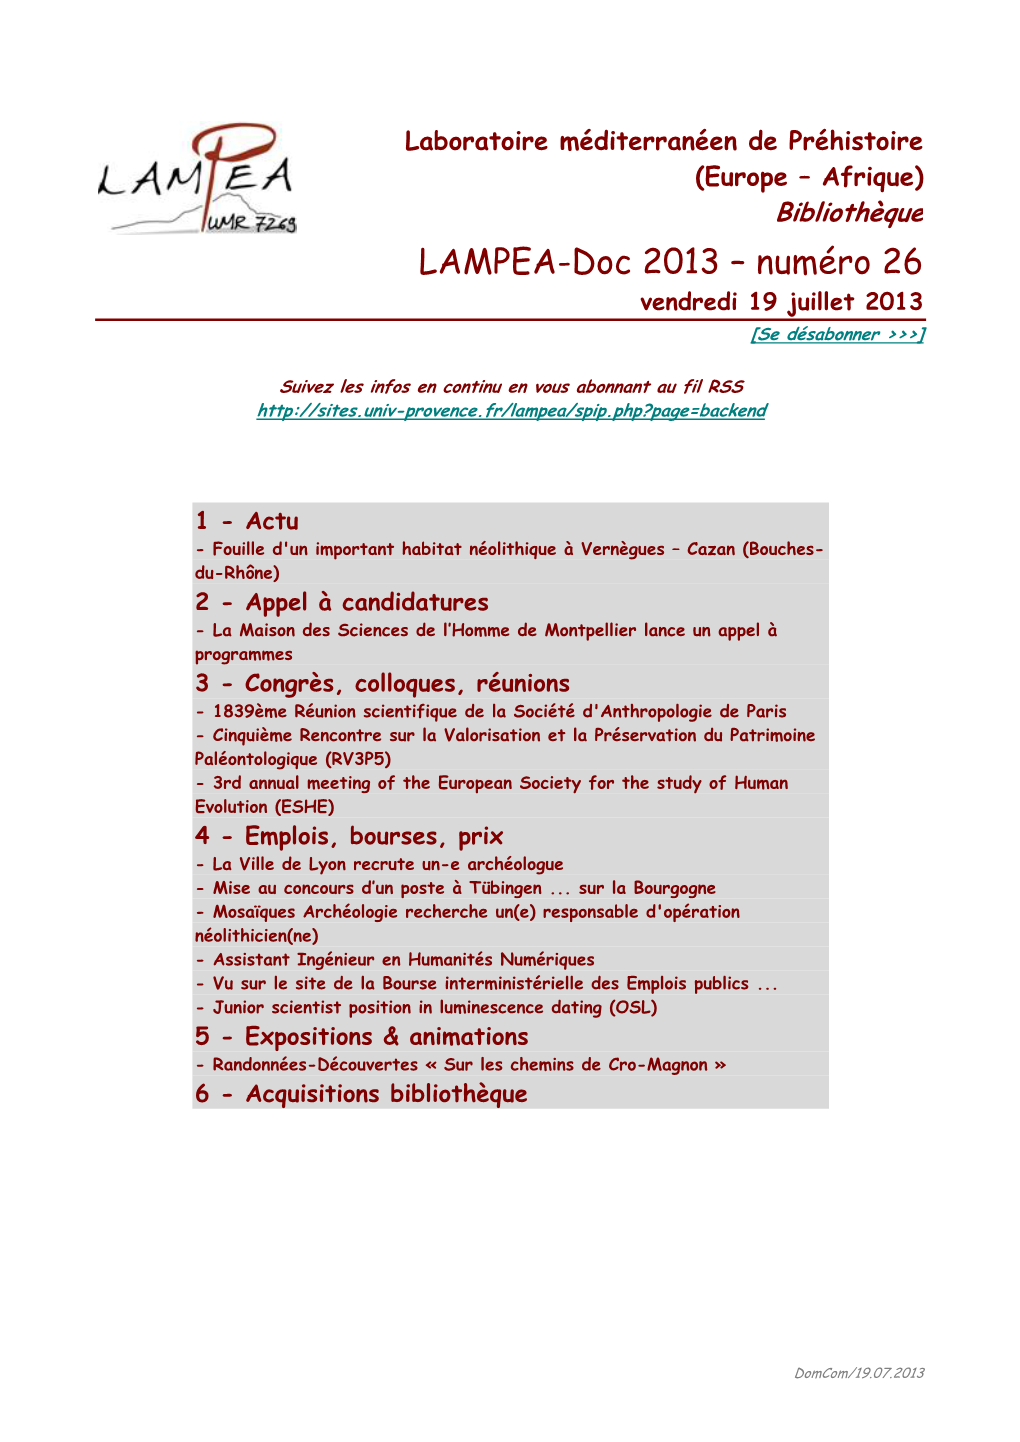 LAMPEA-Doc 2013 – Numéro 26 Vendredi 19 Juillet 2013 [Se Désabonner >>>]